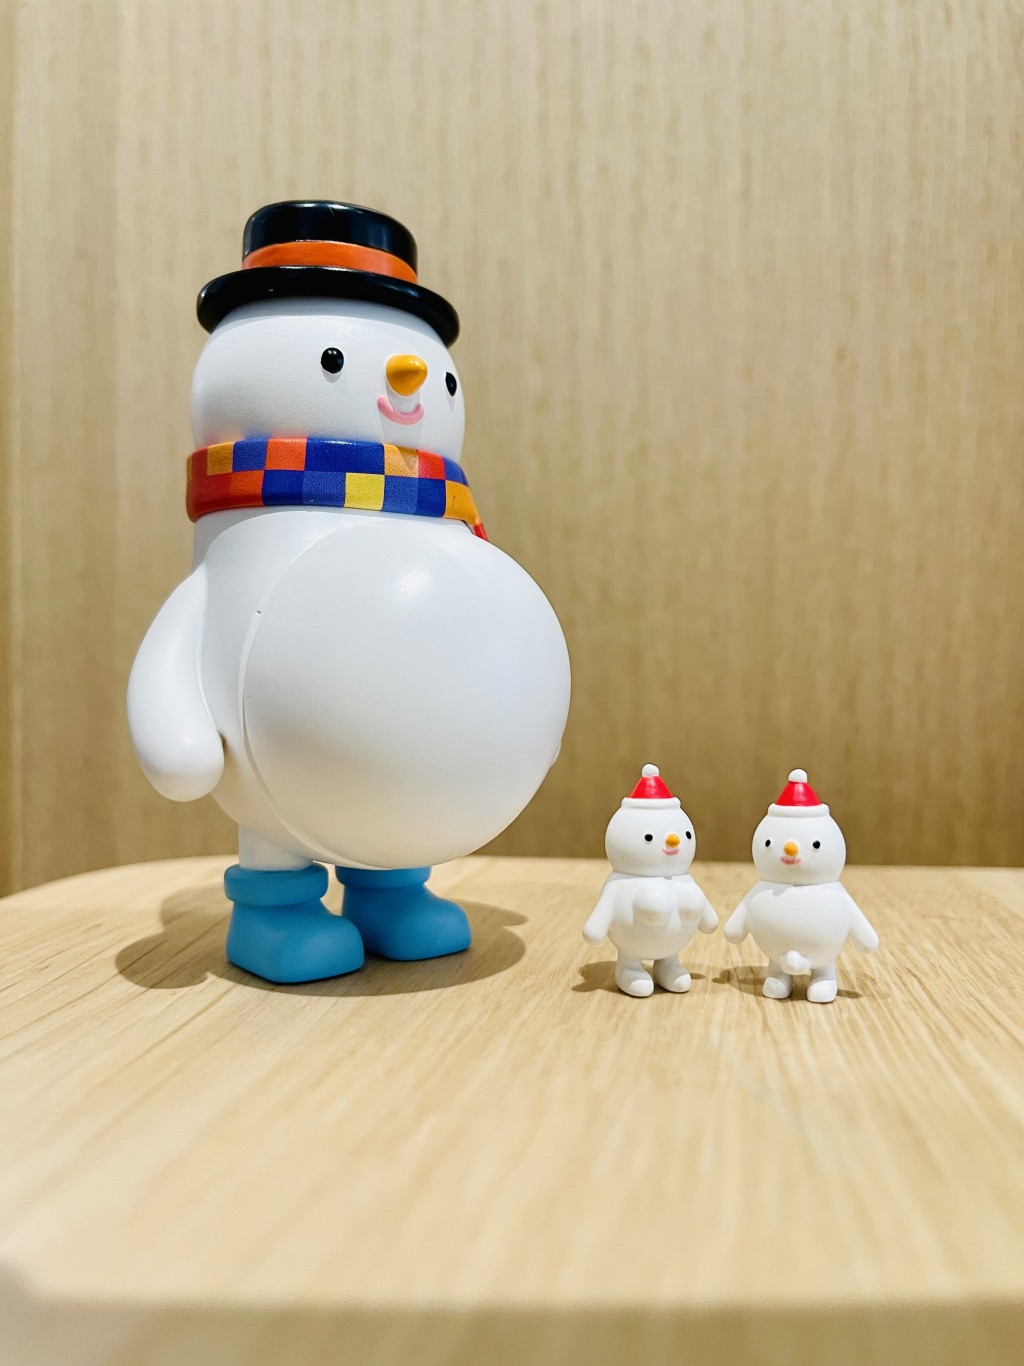 東尼電機亦推出期間限定「聖誕懷孕動物」雪人盲盒